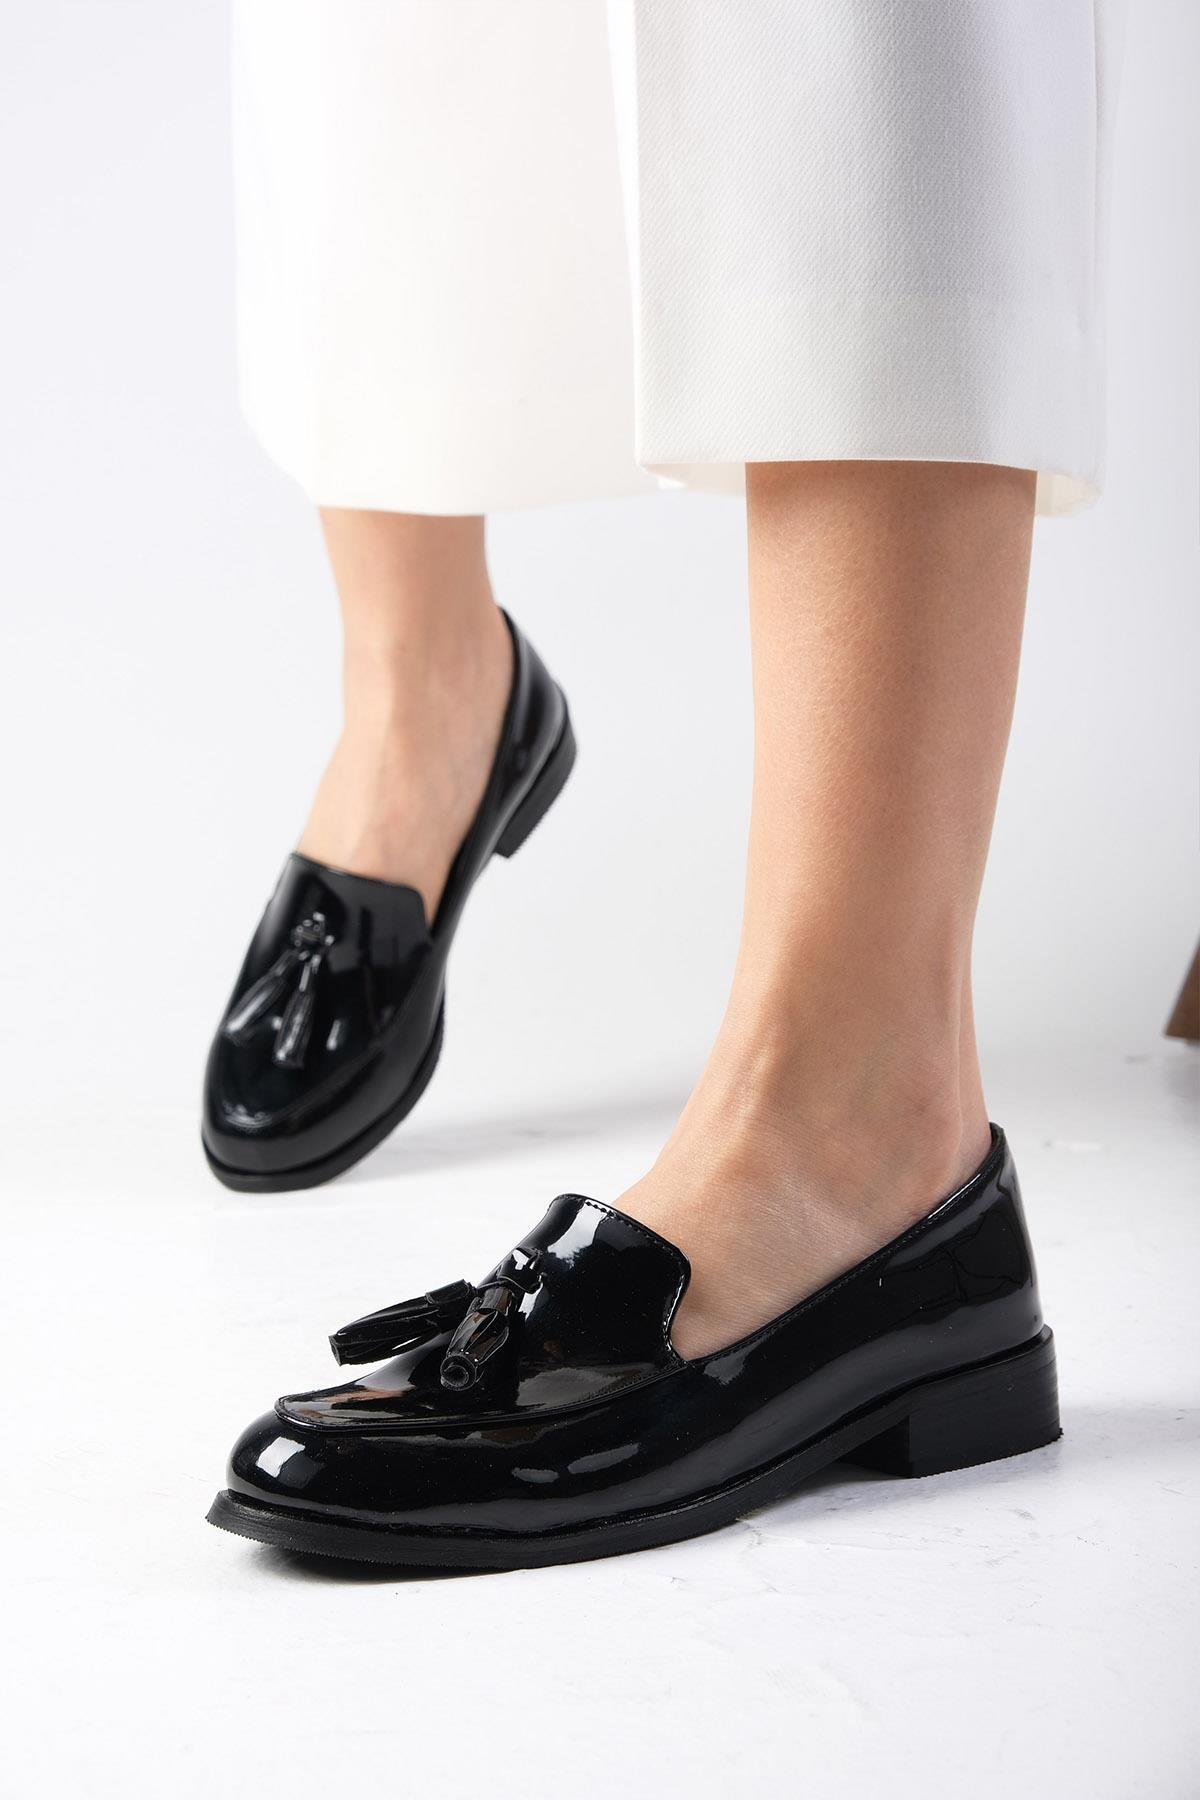 Mio Gusto Siyah Renk Rugan Oxford Ayakkabı